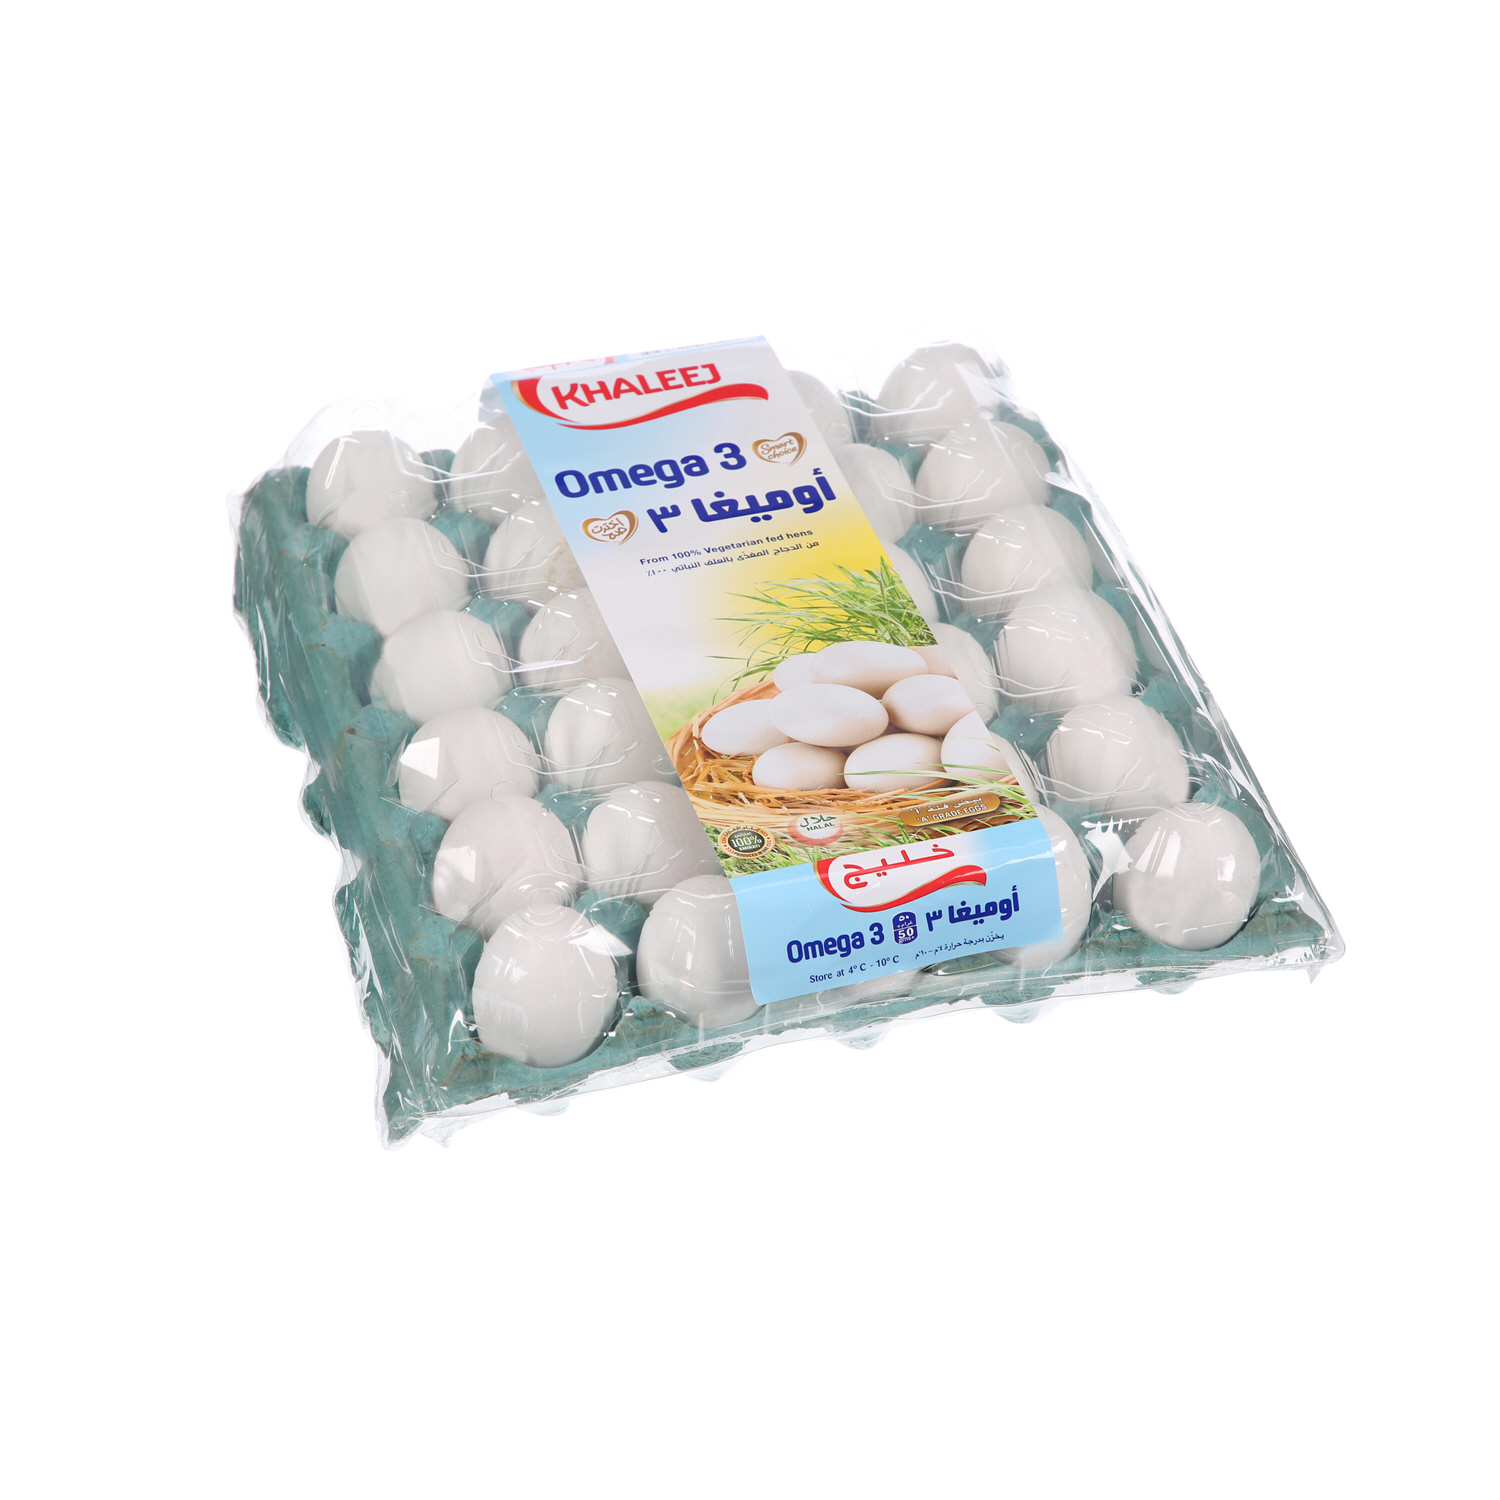 Khaleej White Omega 3 Eggs 30 Pack